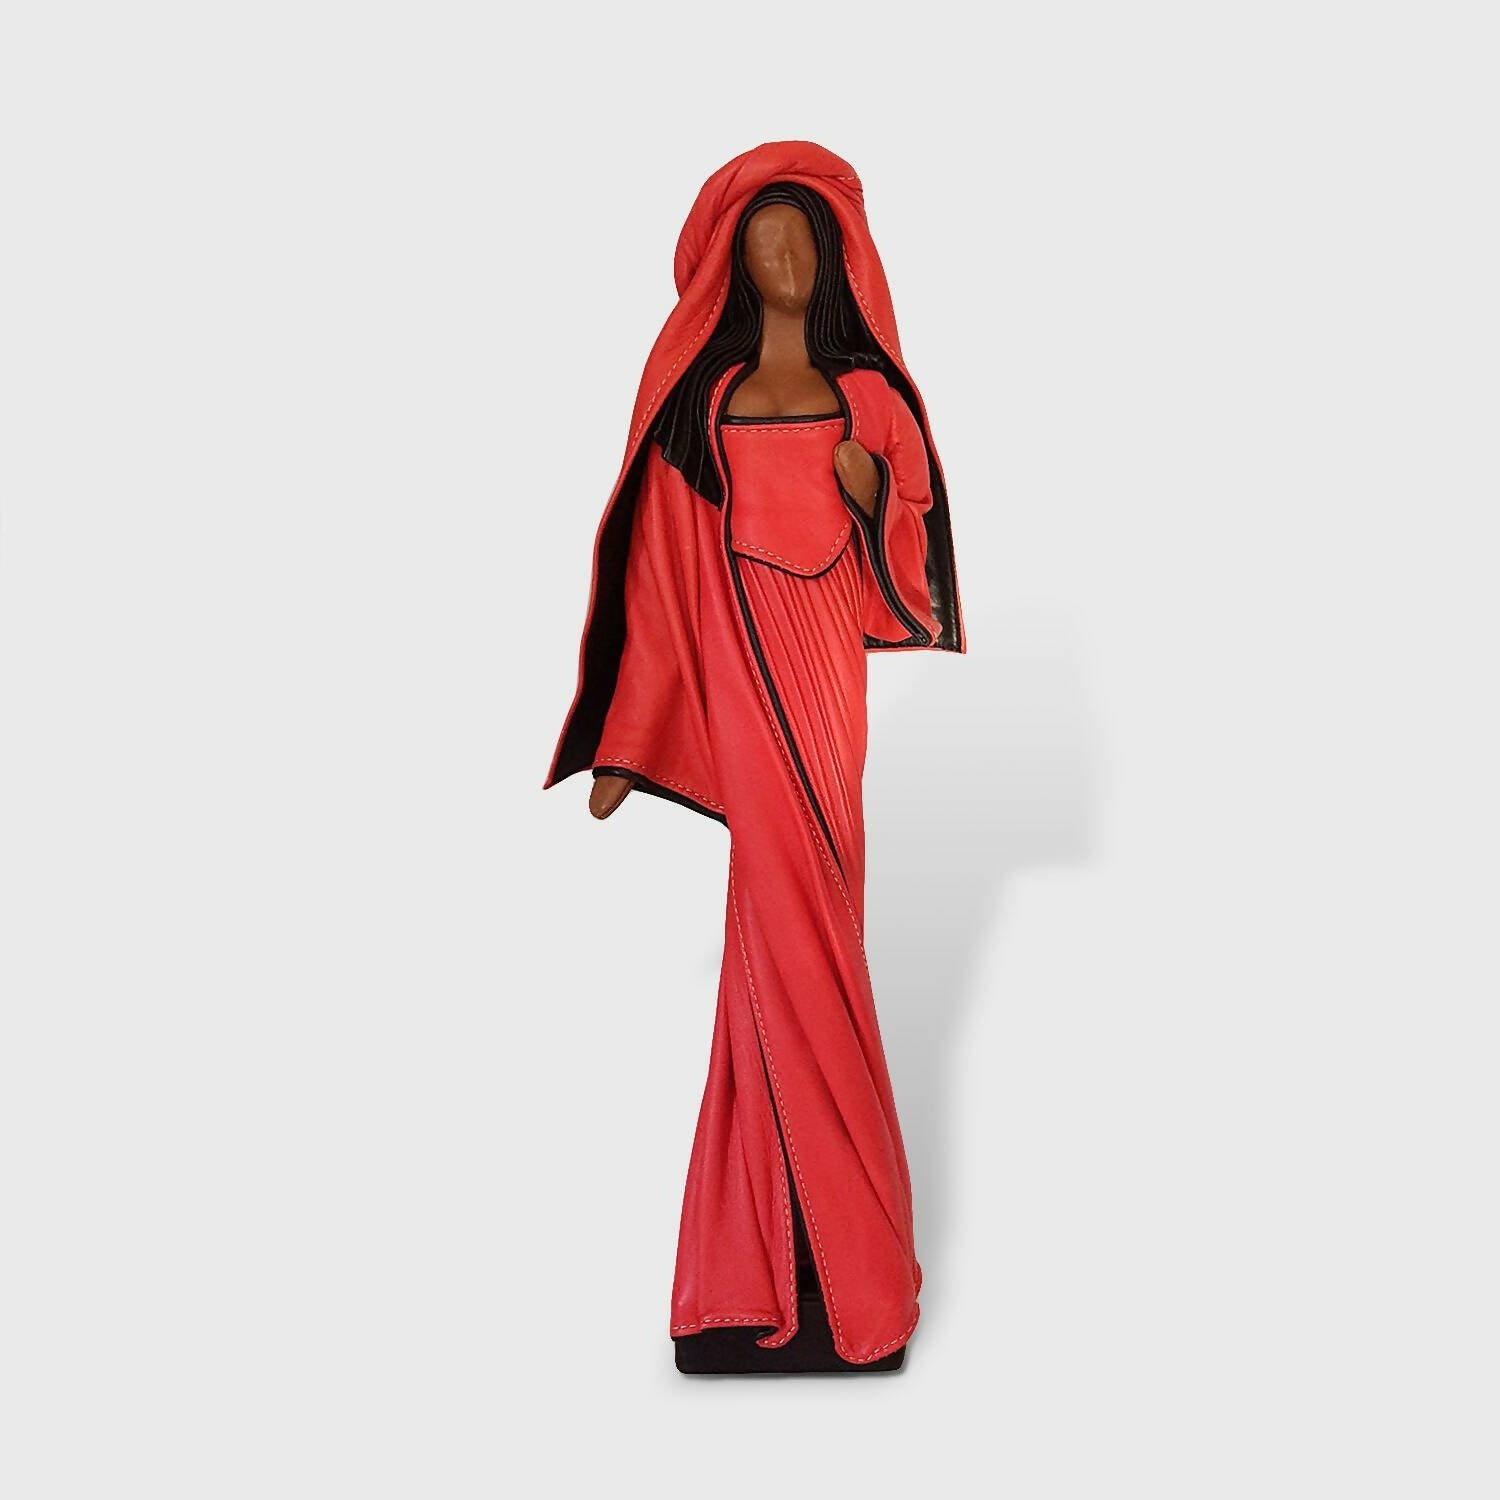 Sculpture Femme rouge debout | EMPREINTES Paris | EMPREINTES Paris